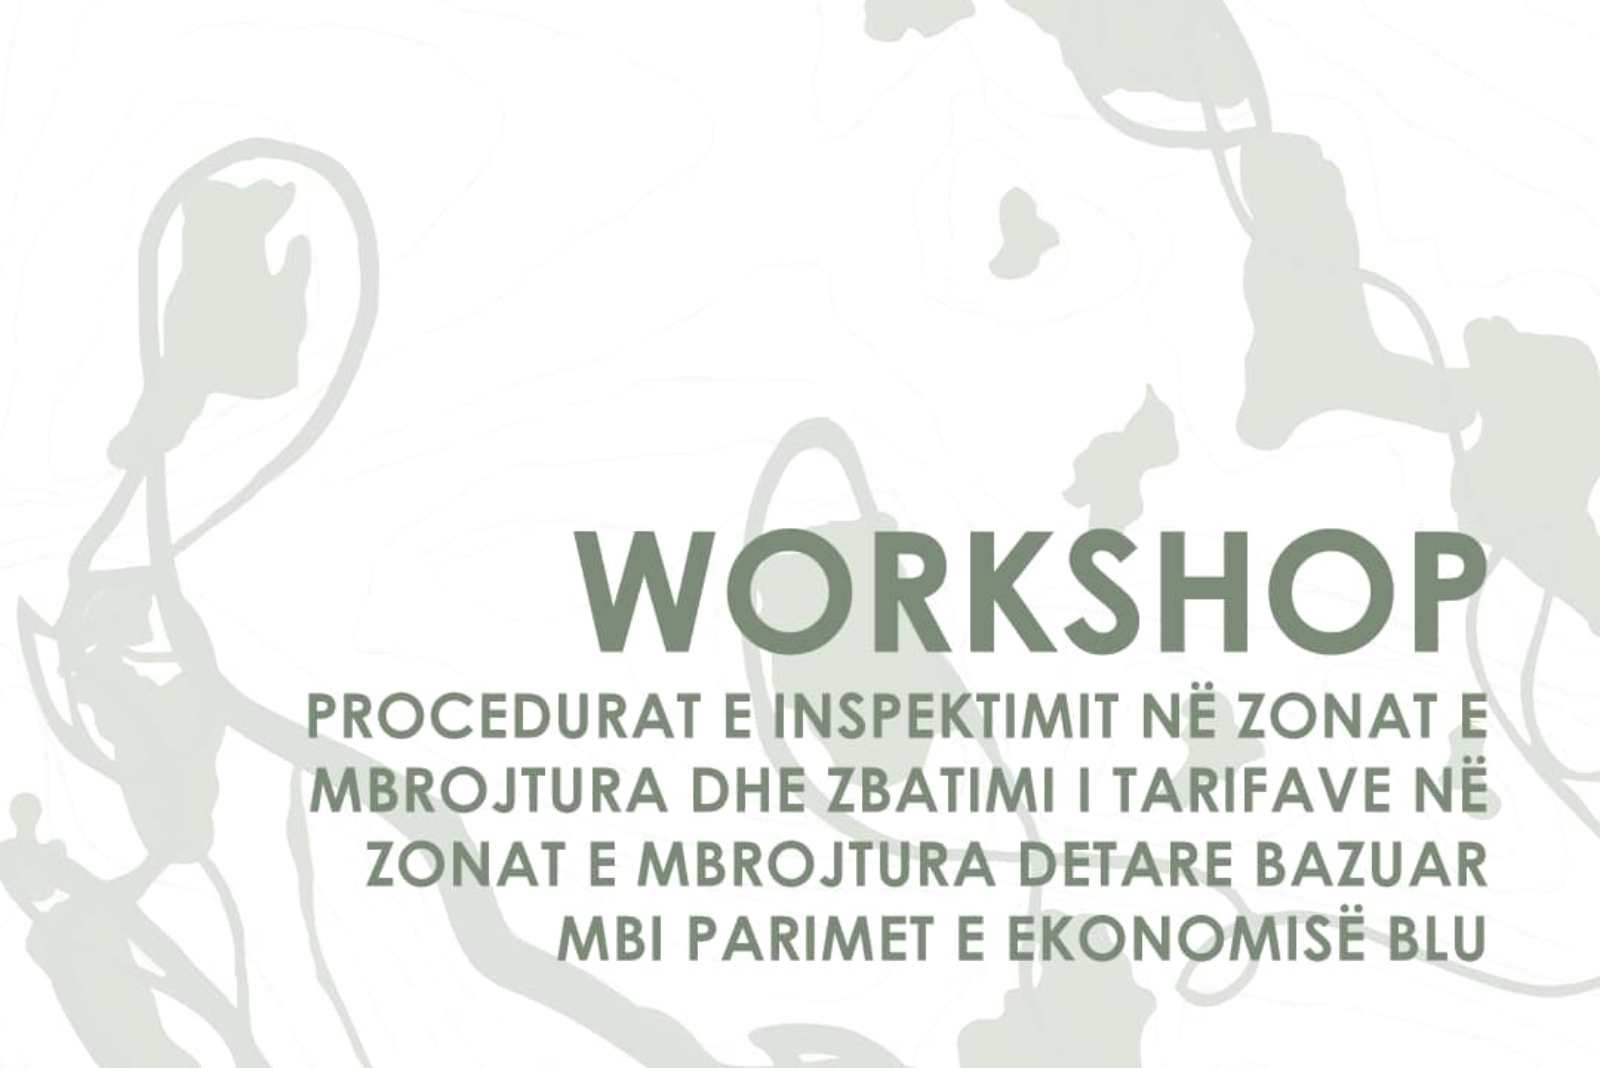 AKZM organizoi Workshop-in: “Procedurat e inspektimit në zonat e mbrojtura dhe zbatimi i tarifave në zonat e mbrojtura detare bazuar mbi parimet e ekonomisë blu”, organizuar nga Agjencia Kombëtare e Zonave të Mbrojtura”